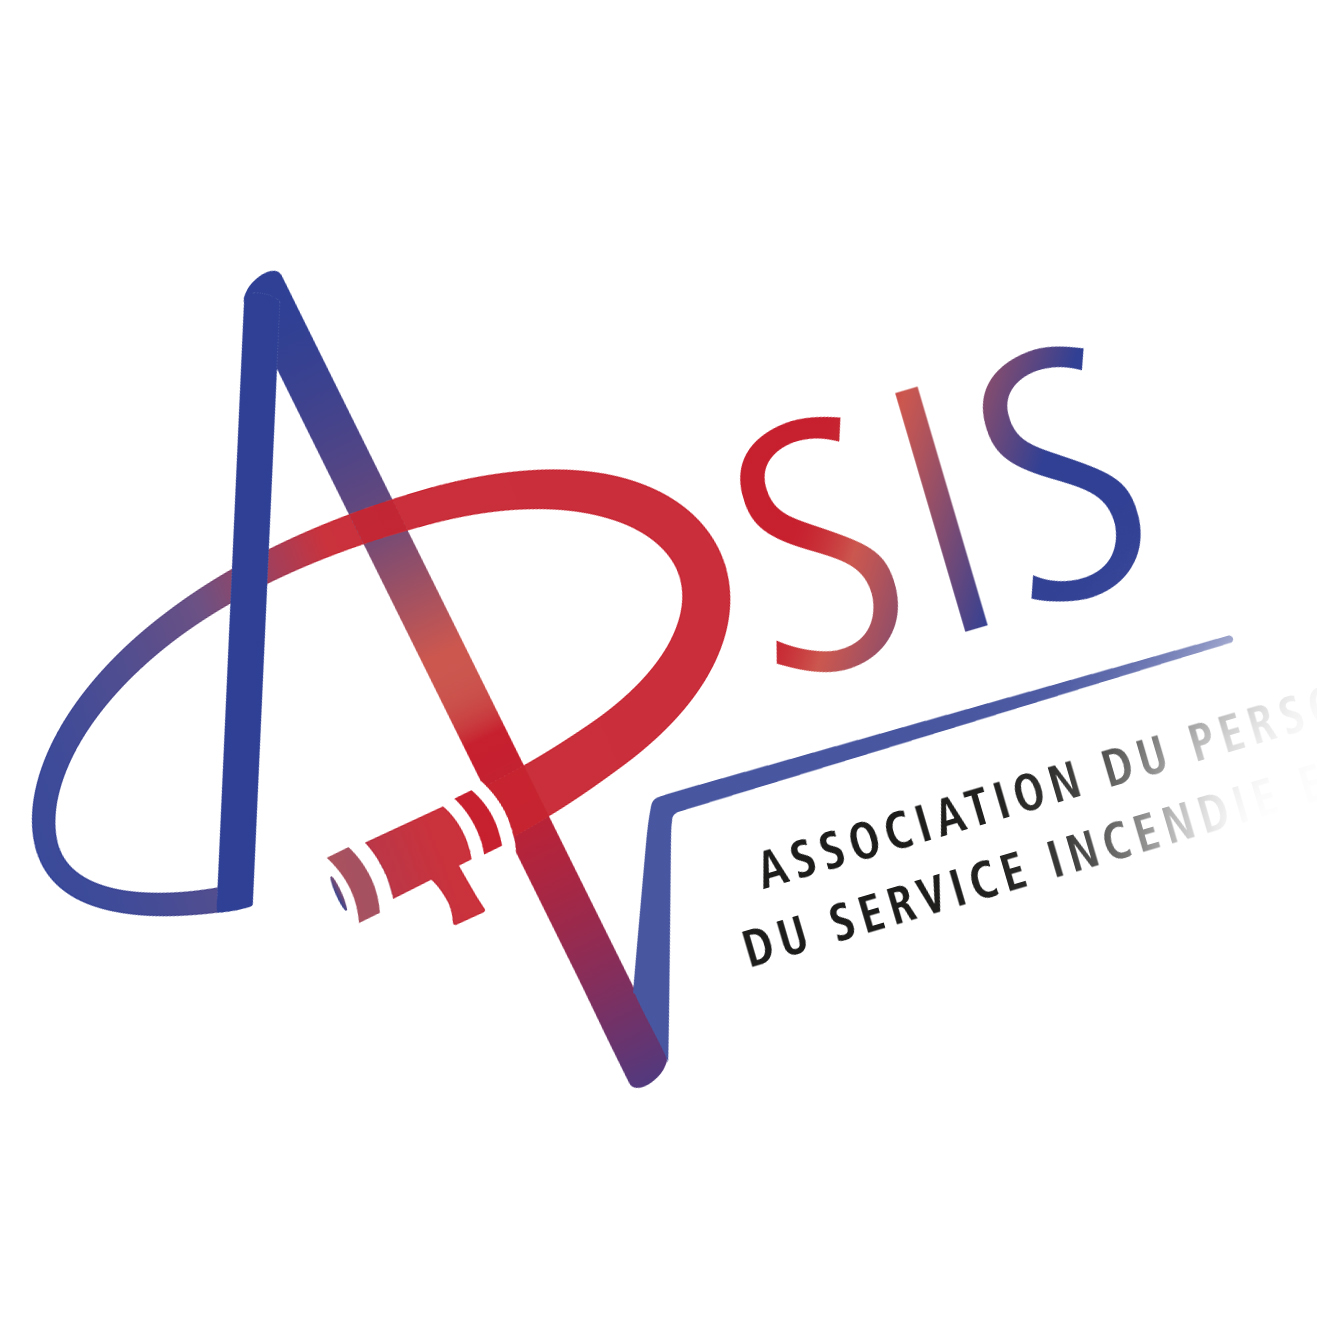 APSIS - Association du Prsonnel du Service Incendie et de Secours